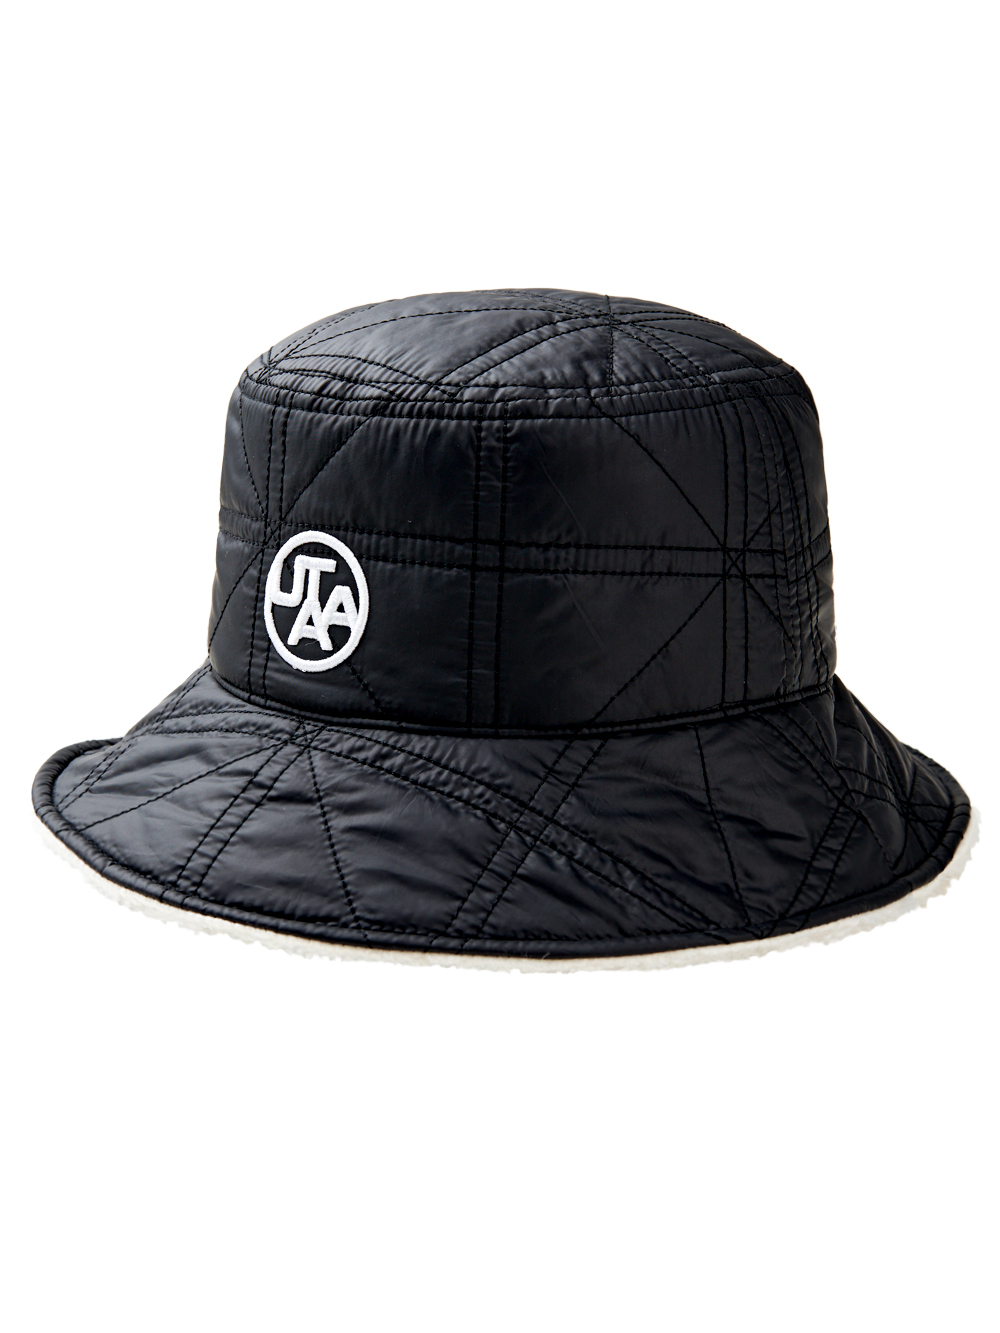 UTAA Quilting Fleece Bucket Hat : Black(UD1GCU748BK)